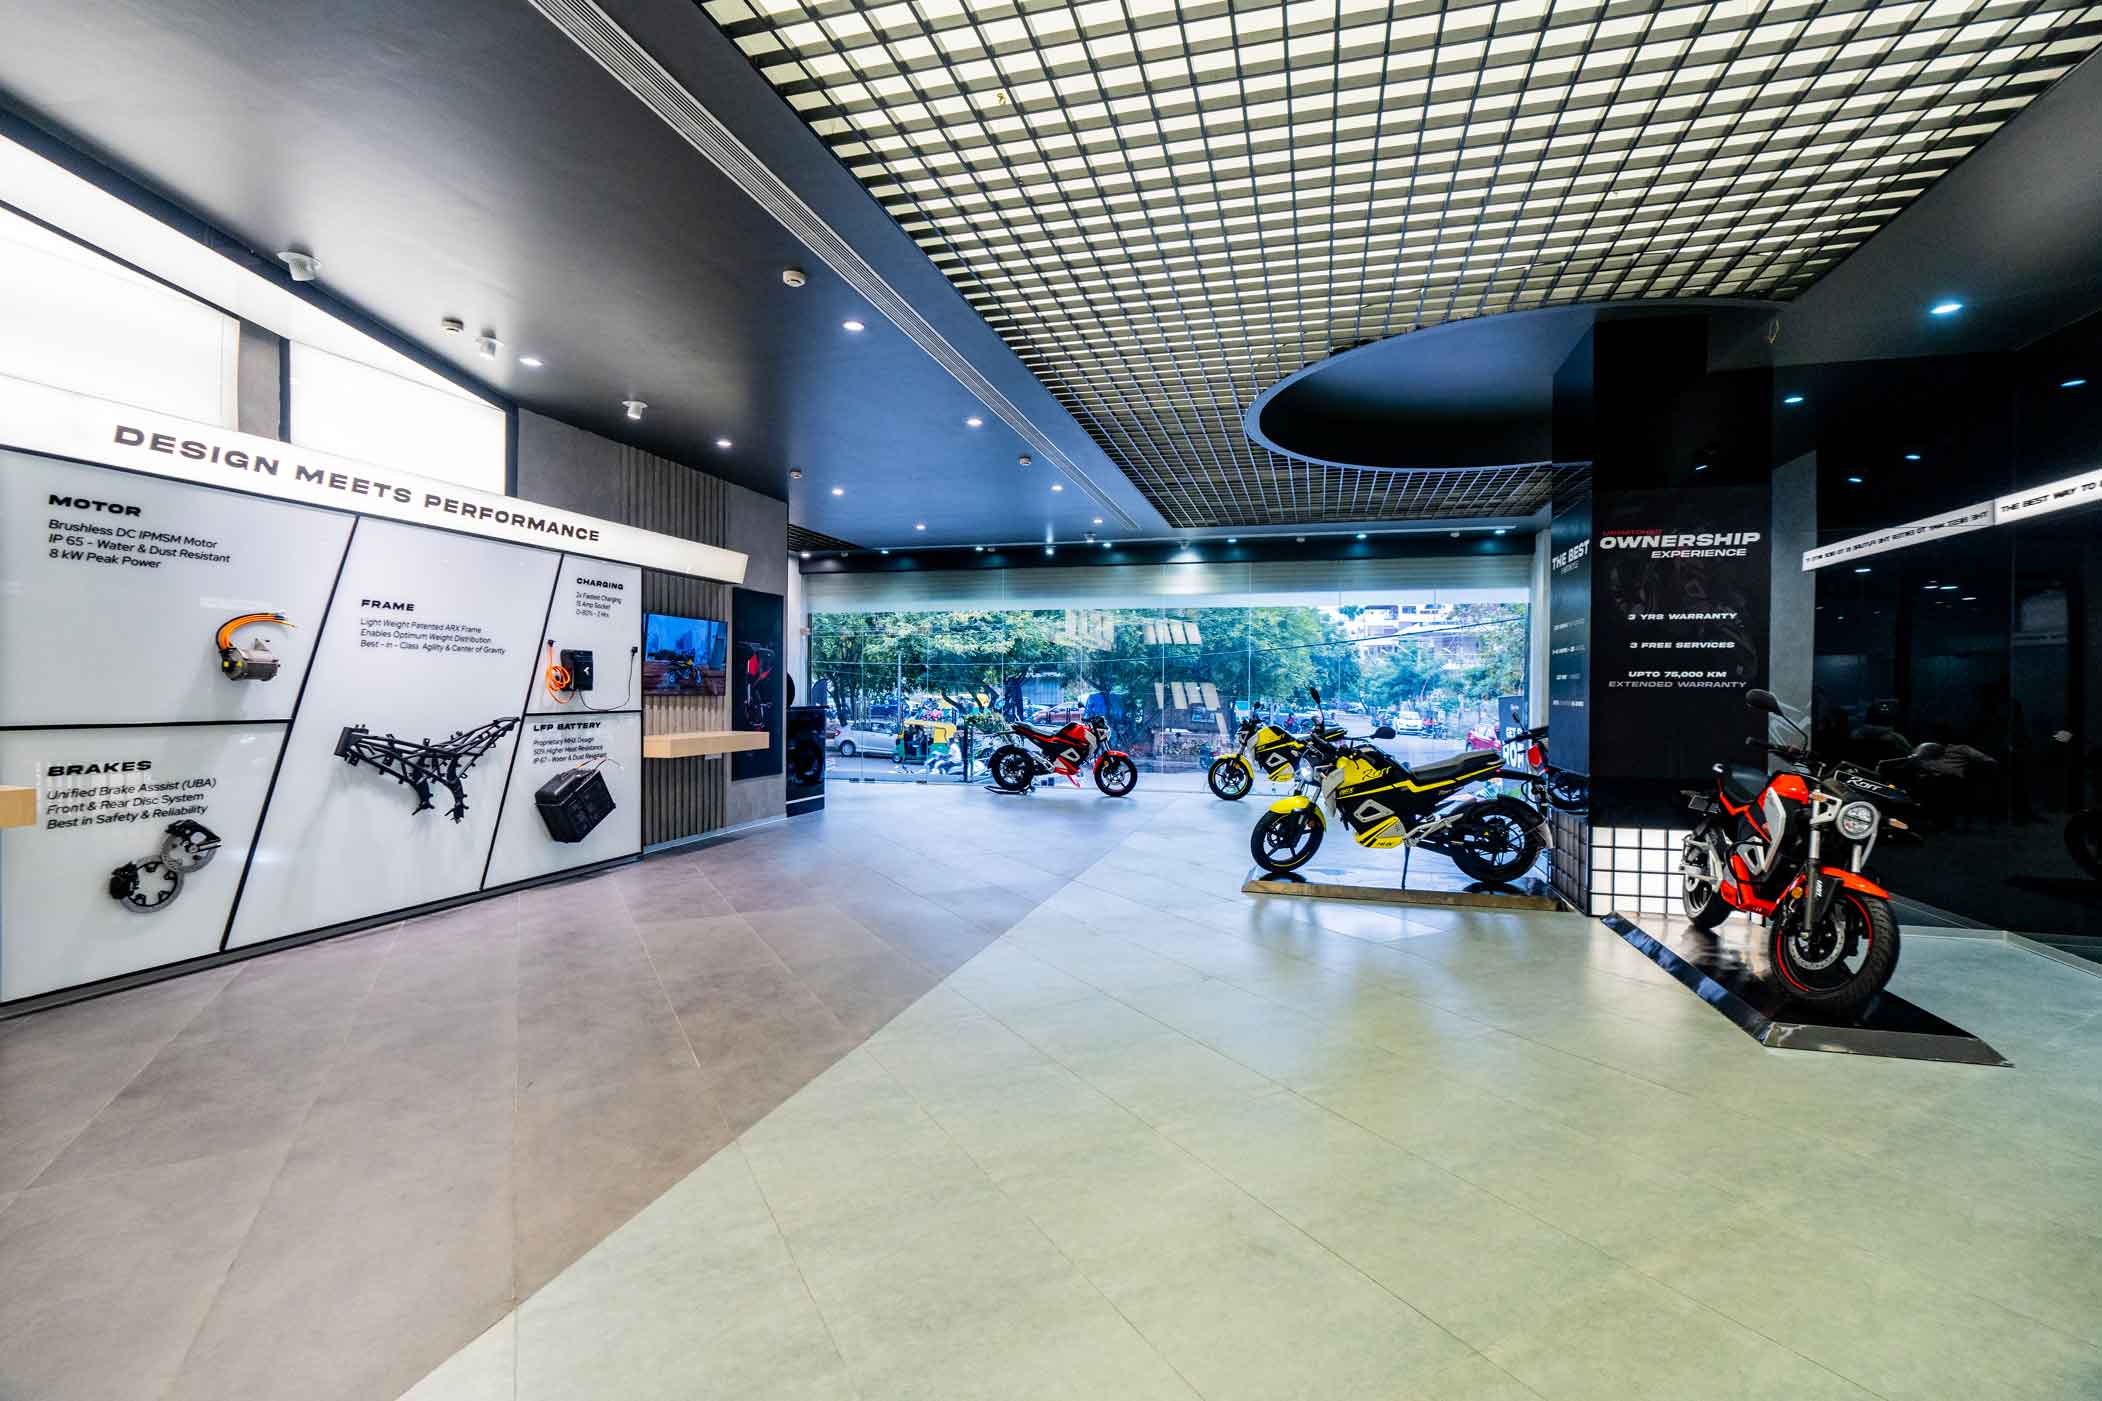 Inside store look: Bikes on display